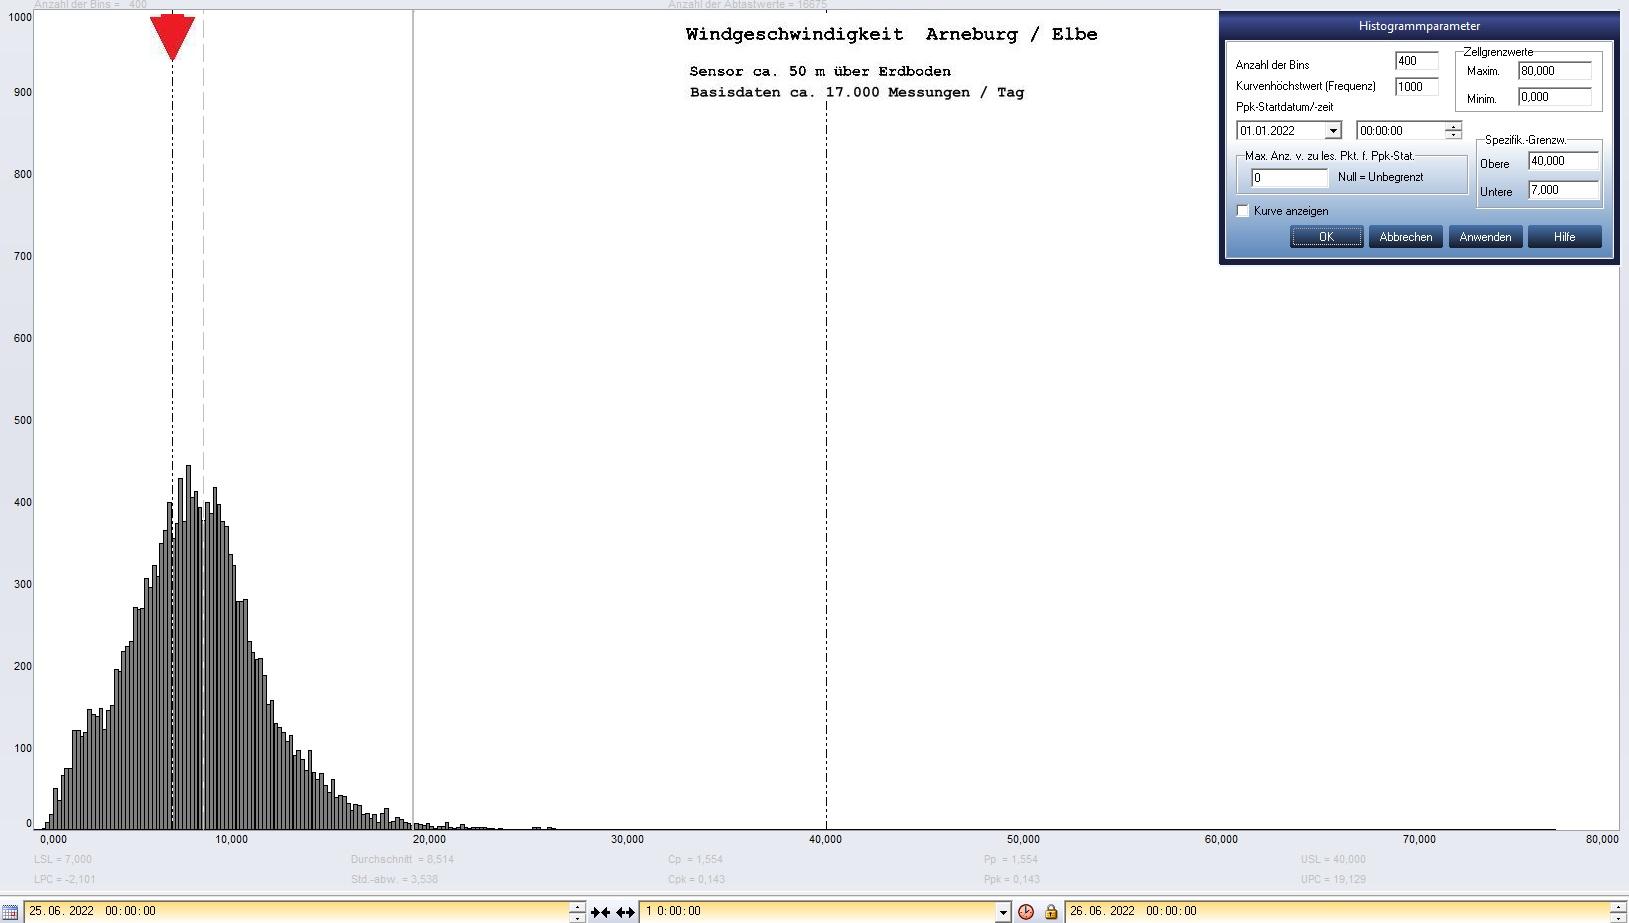 Arneburg Tages-Histogramm Winddaten, 25.06.2022
  Histogramm, Sensor auf Gebude, ca. 50 m ber Erdboden, Basis: 5s-Aufzeichnung